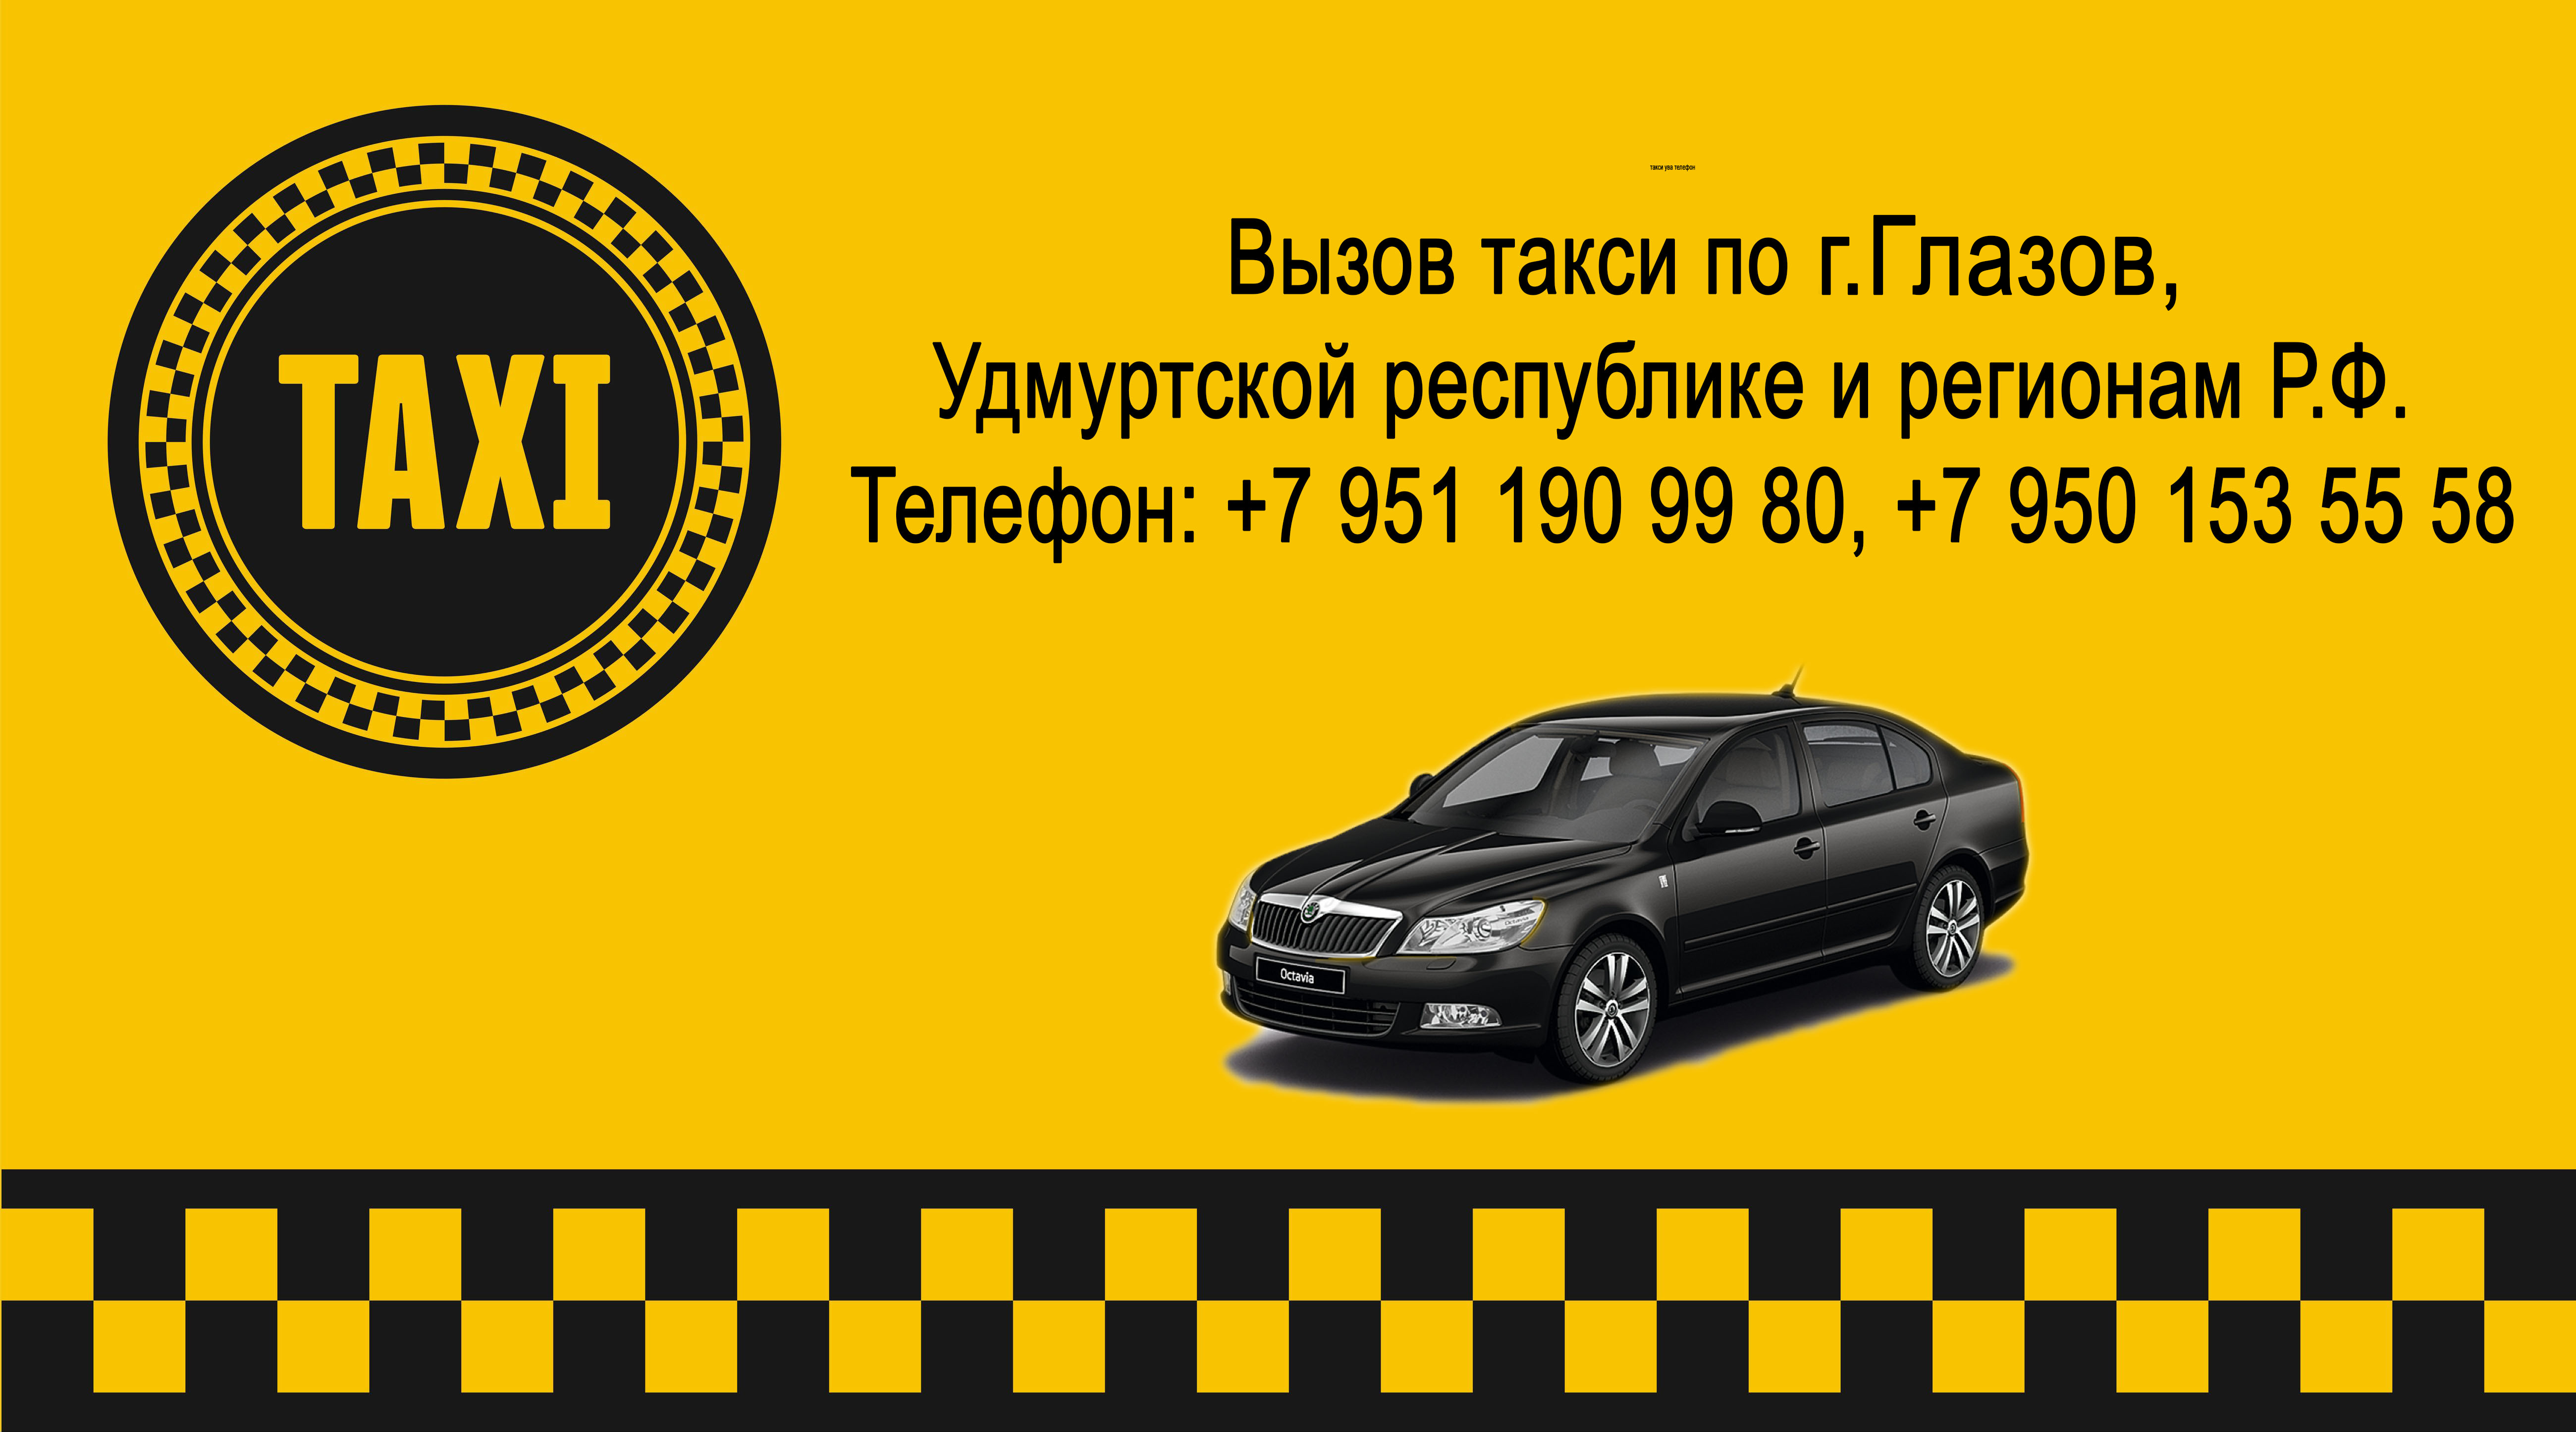 Такси чусового телефоны. Номер такси. Номера таксистов. Такси Ува. Такси номер такси.